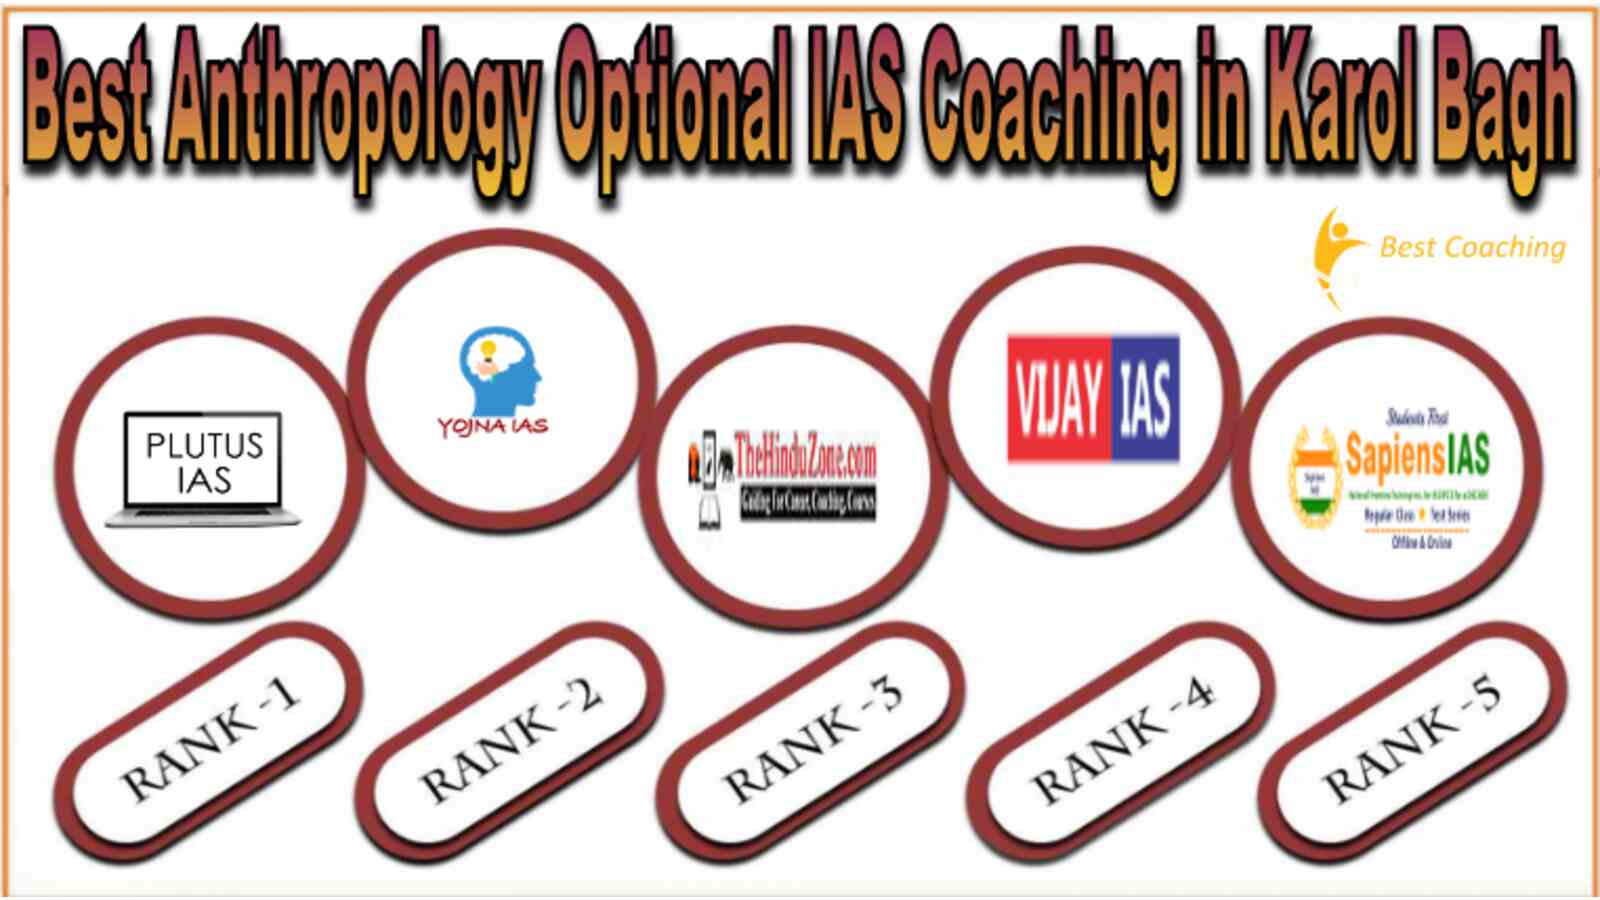 Best Anthropology Optional IAS Coaching in Karol Bagh